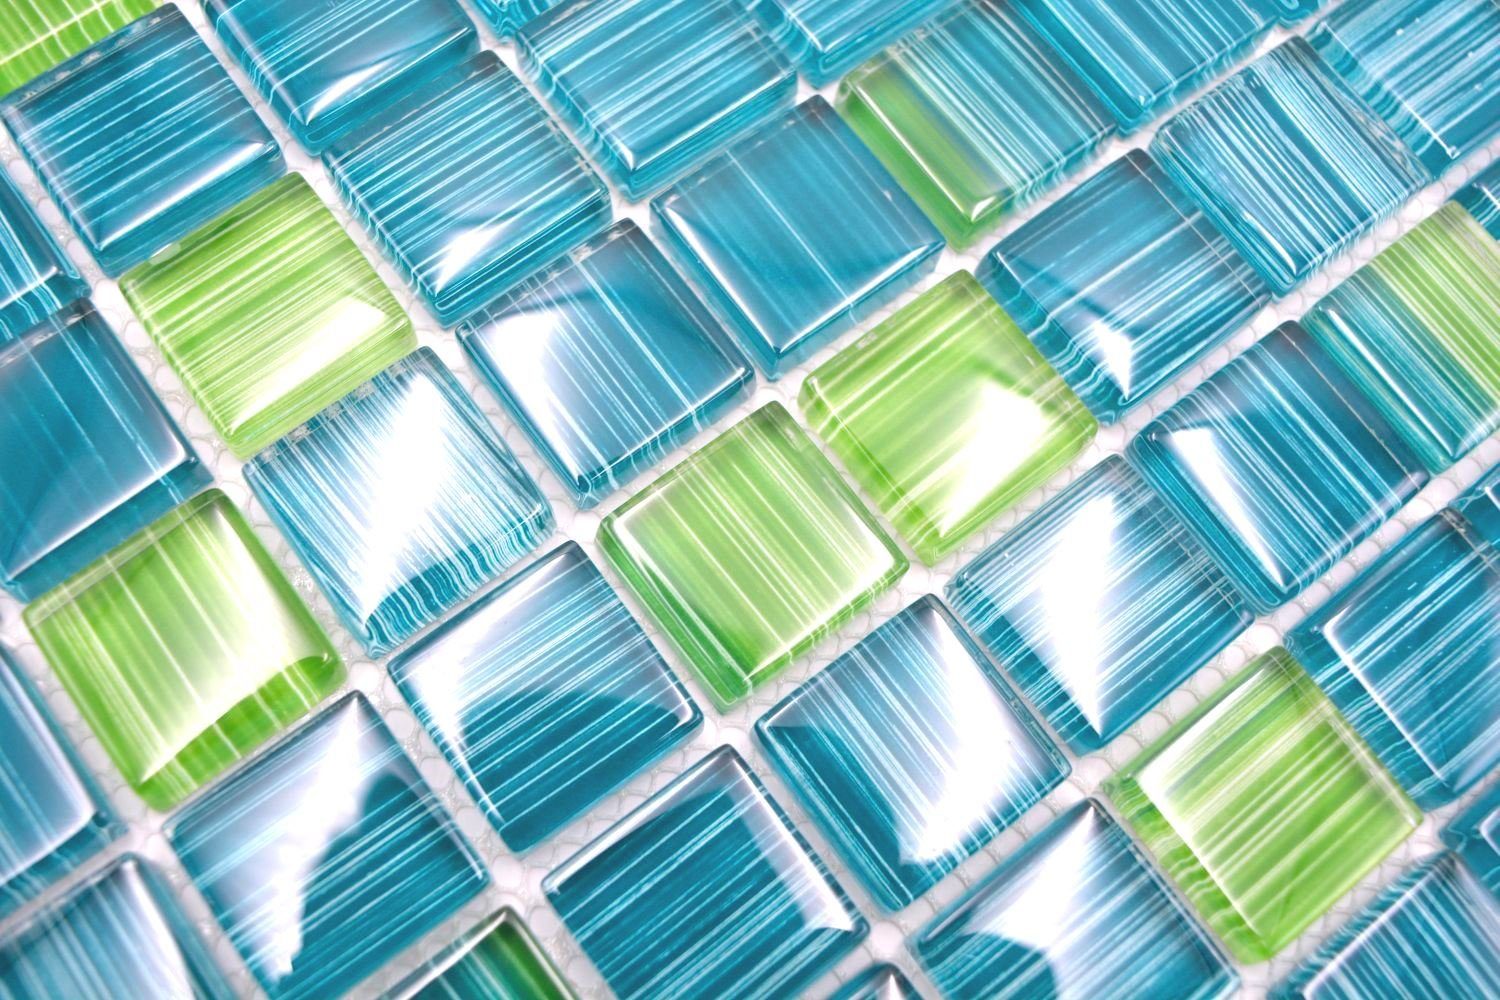 Crystal Matten glänzend Mosani strichgrün / Mosaikfliesen 10 Mosaikfliesen Glasmosaik